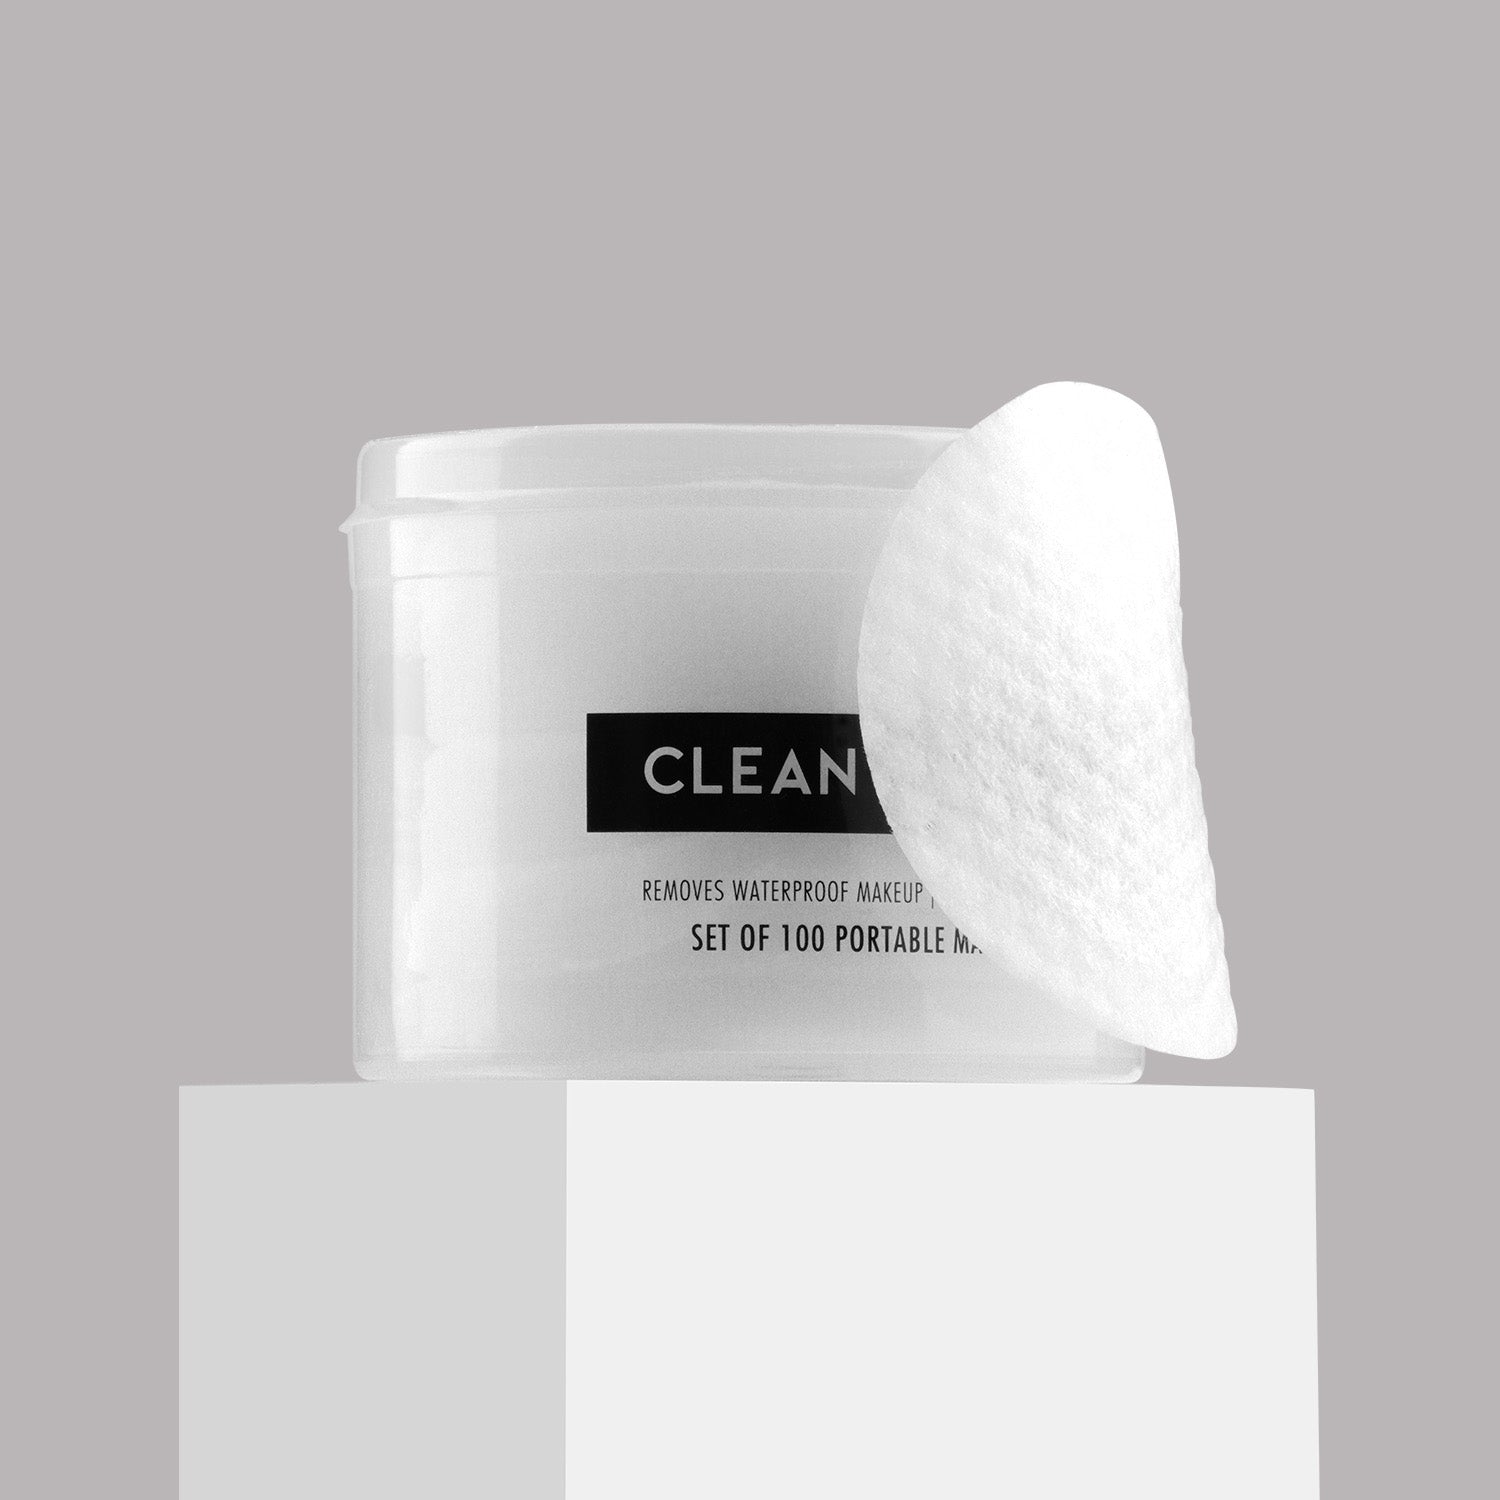 PAC Cosmetics Clean Slate Wipes (90 gm)